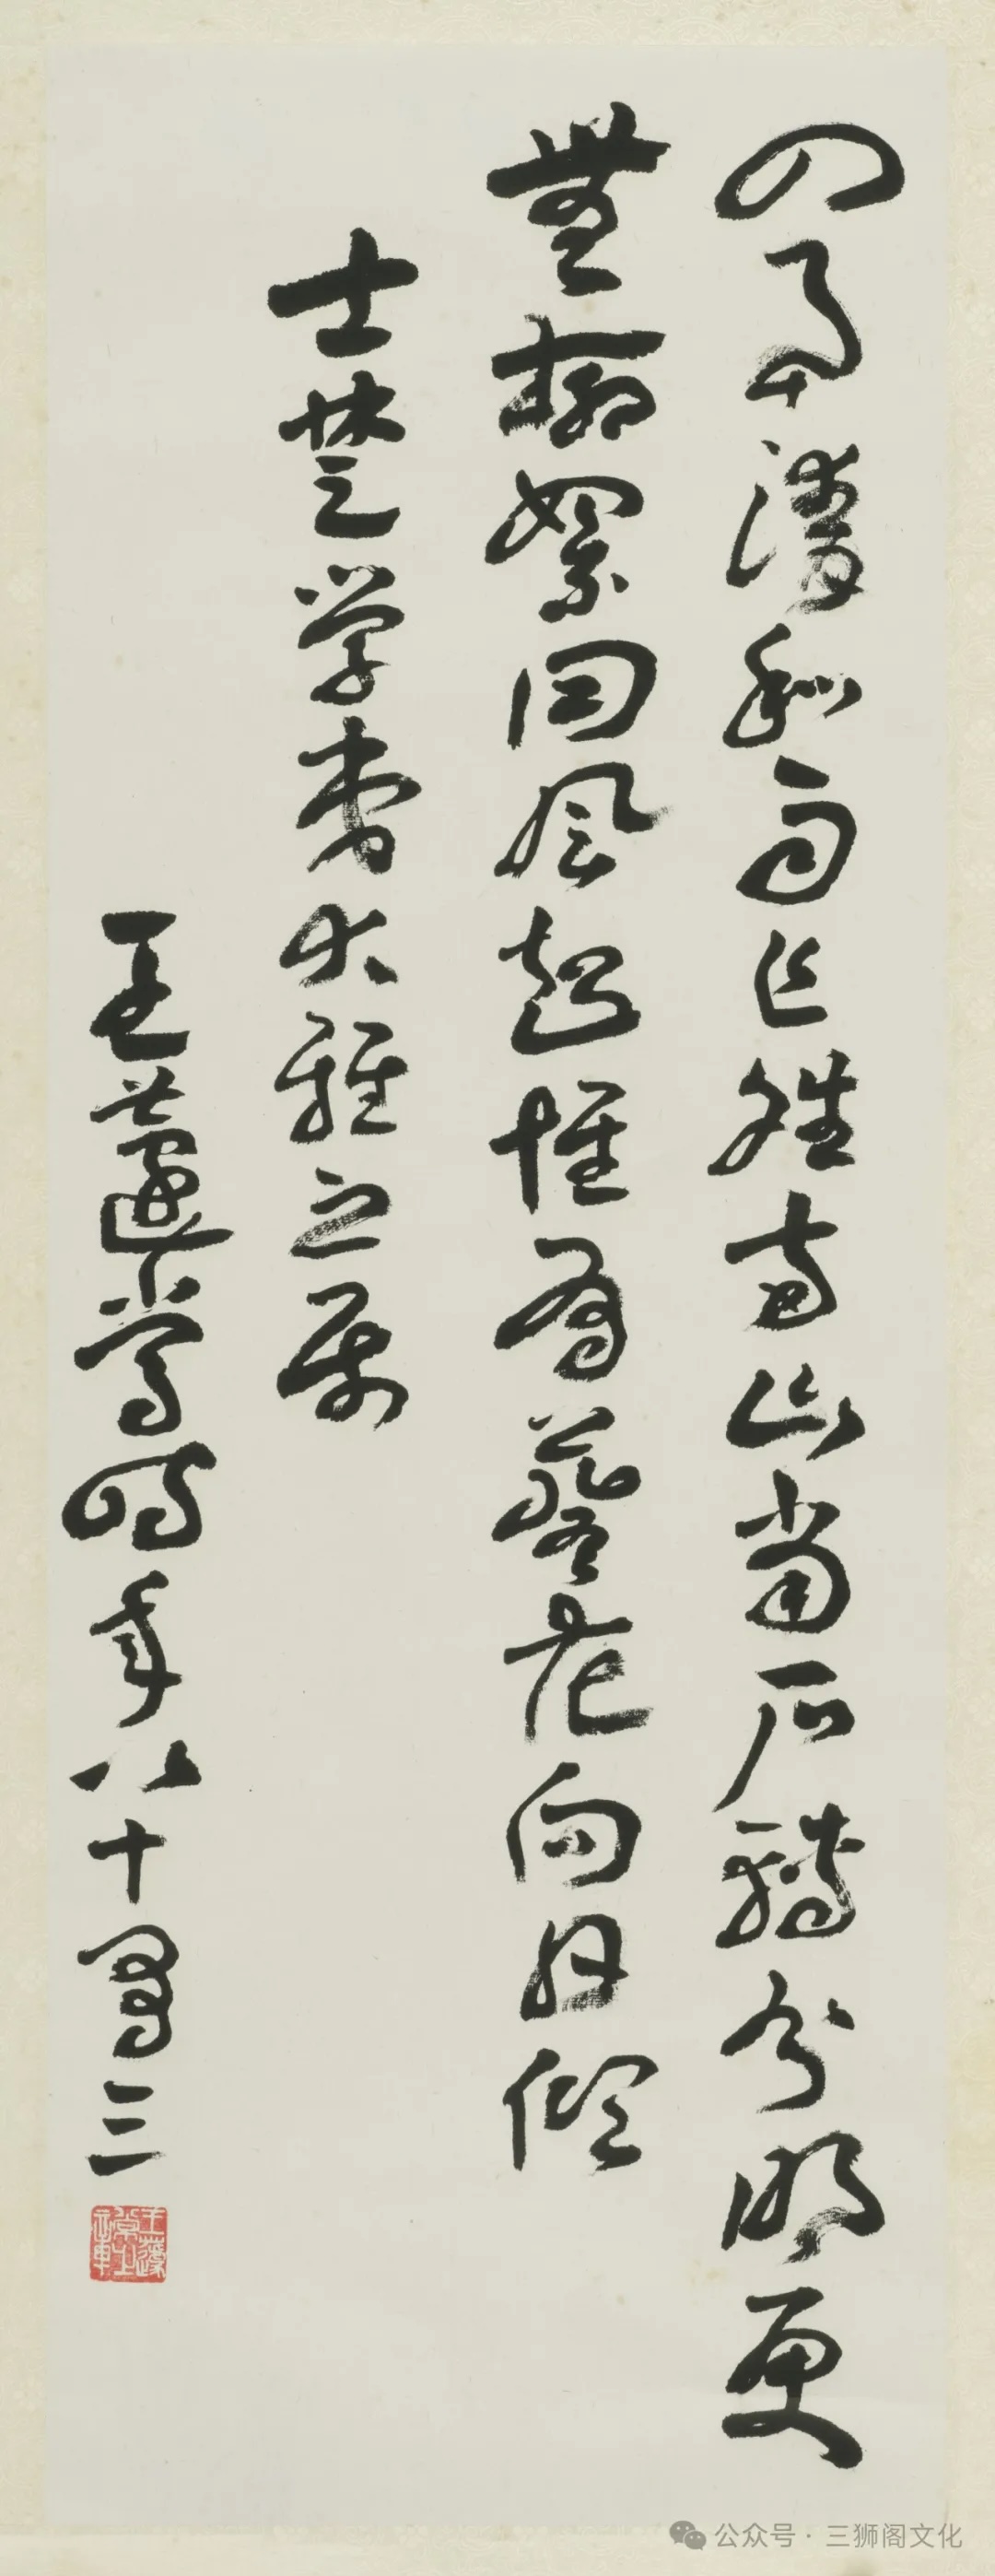 王蘧常，《司马光诗》 纸本，立轴 88.0cm×32.0cm